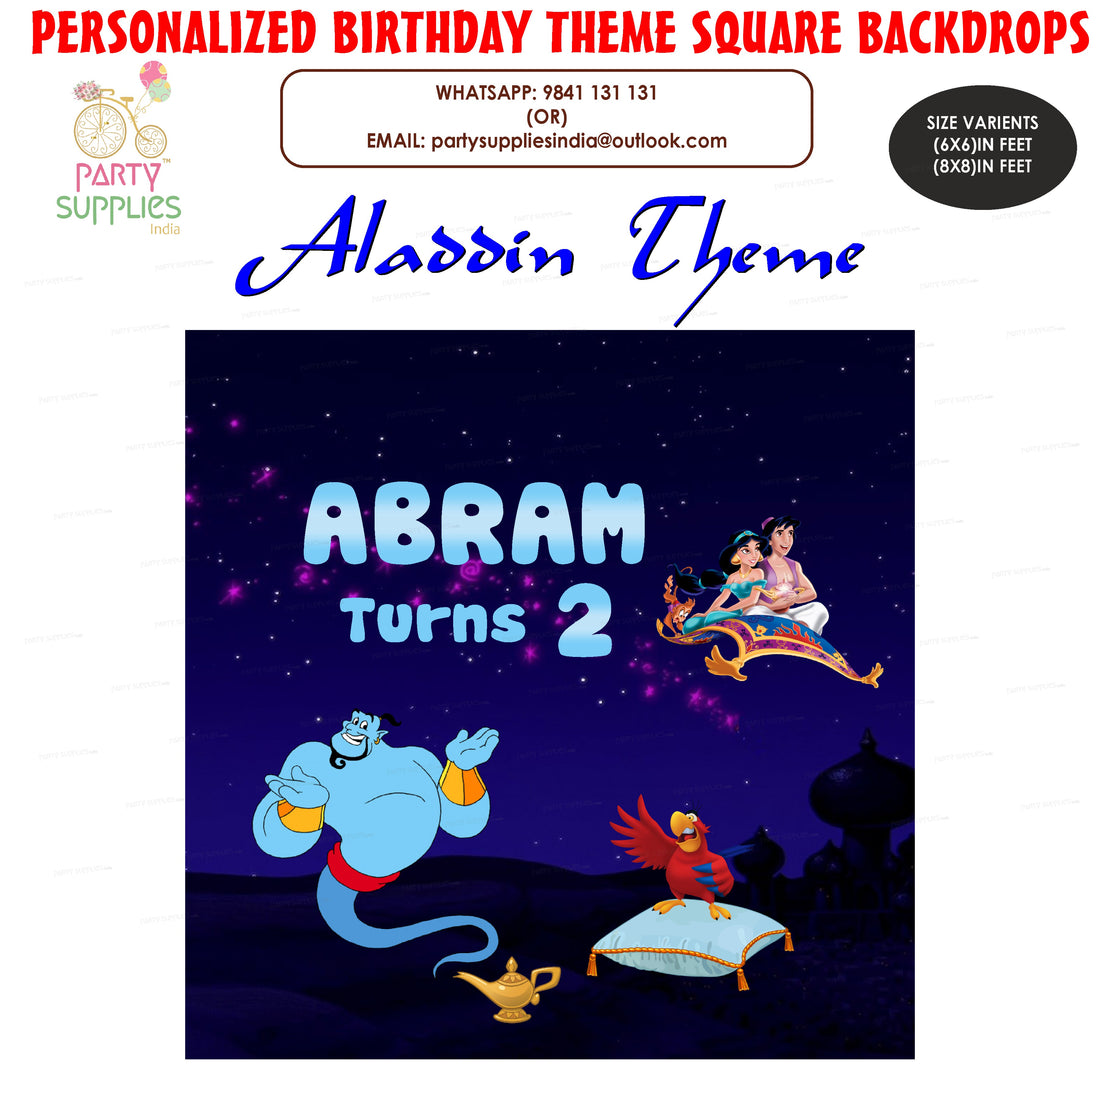 PSI Aladdin Theme Personalized Square Backdrop